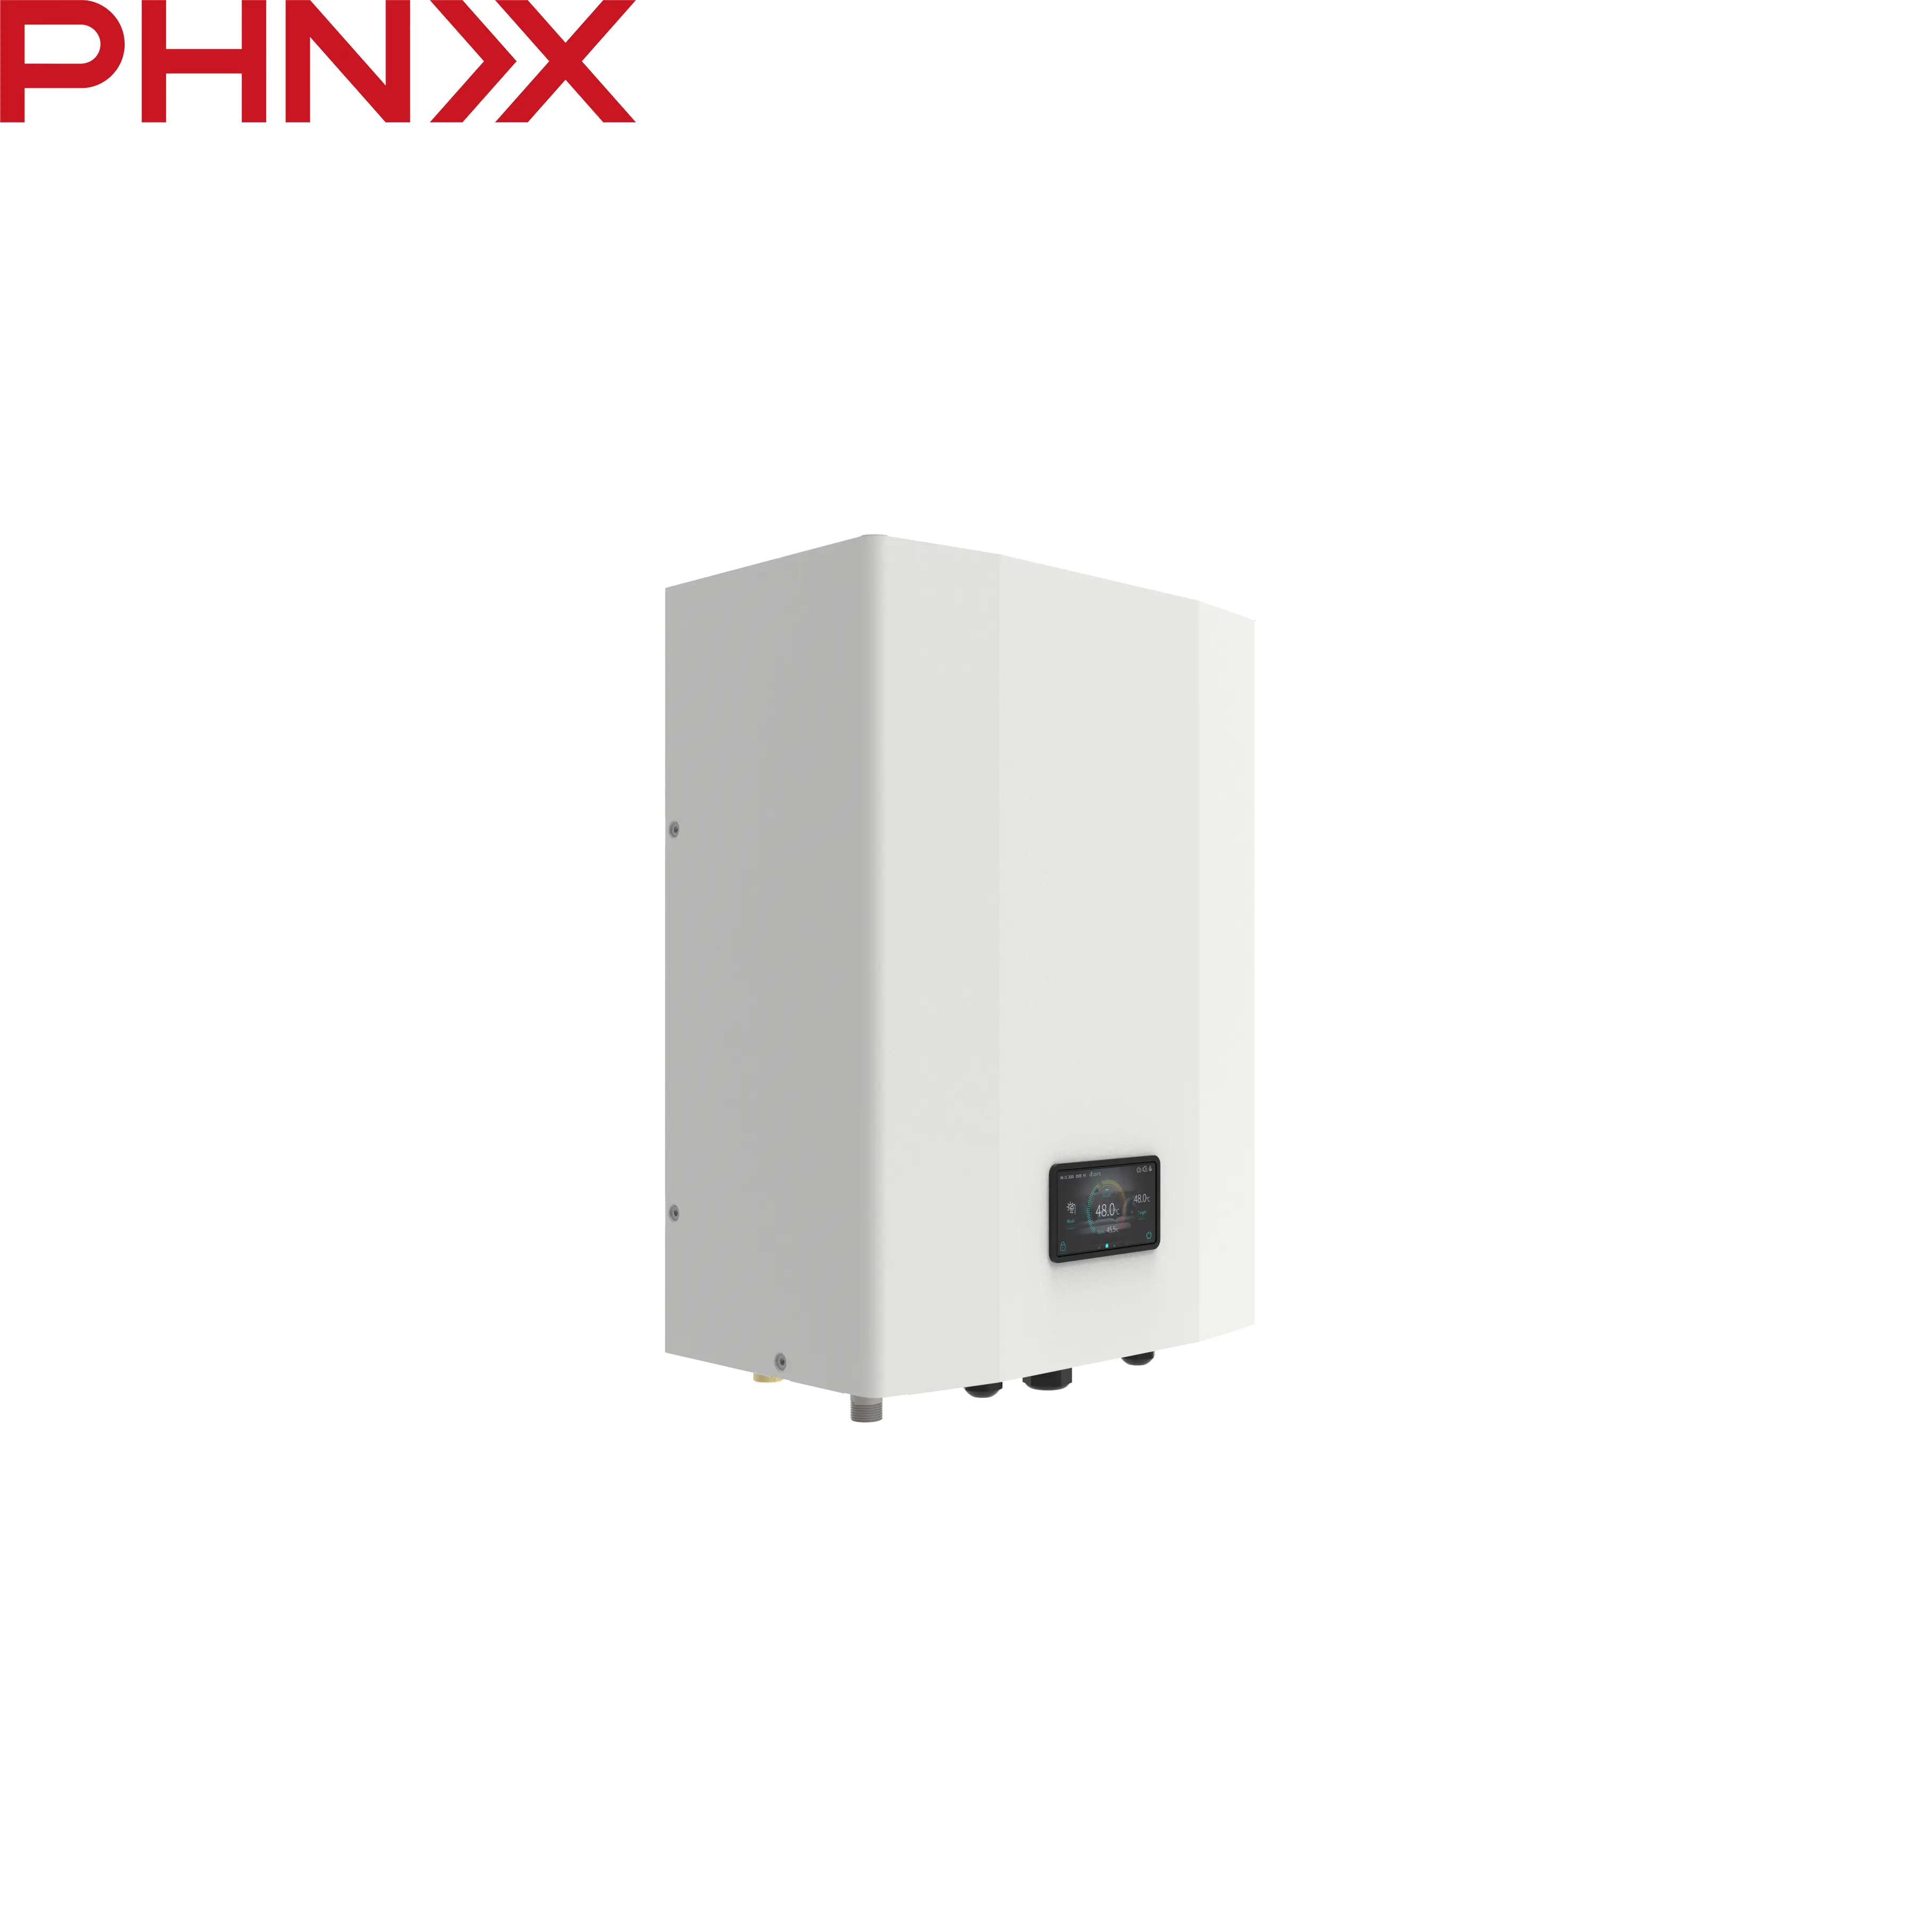 Phnix โมดูลไฮดรอลิก easyhyhydro เชื่อมต่อกับปั๊มความร้อนสำหรับการให้ความร้อนในพื้นที่และน้ำร้อนมาตรฐานอเมริกาเหนือ